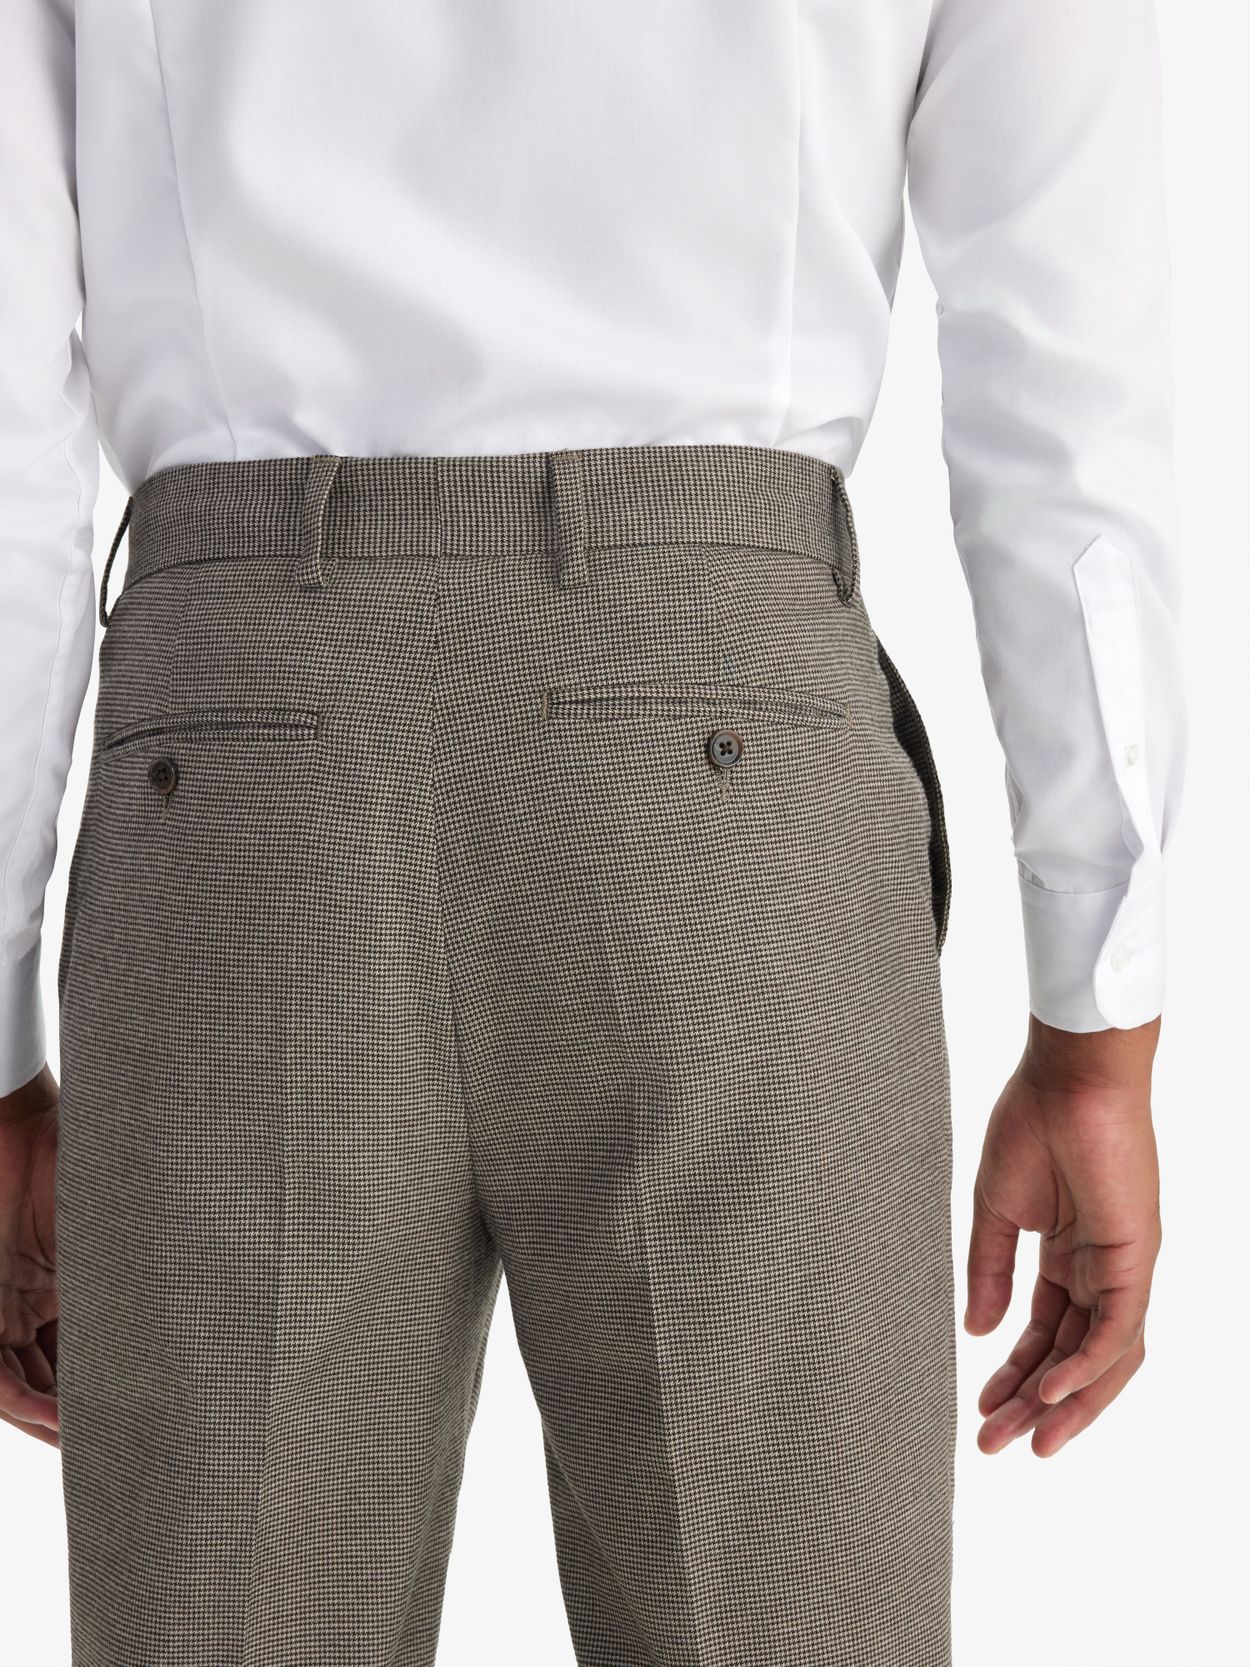 Brown & Beige Flannel Pants